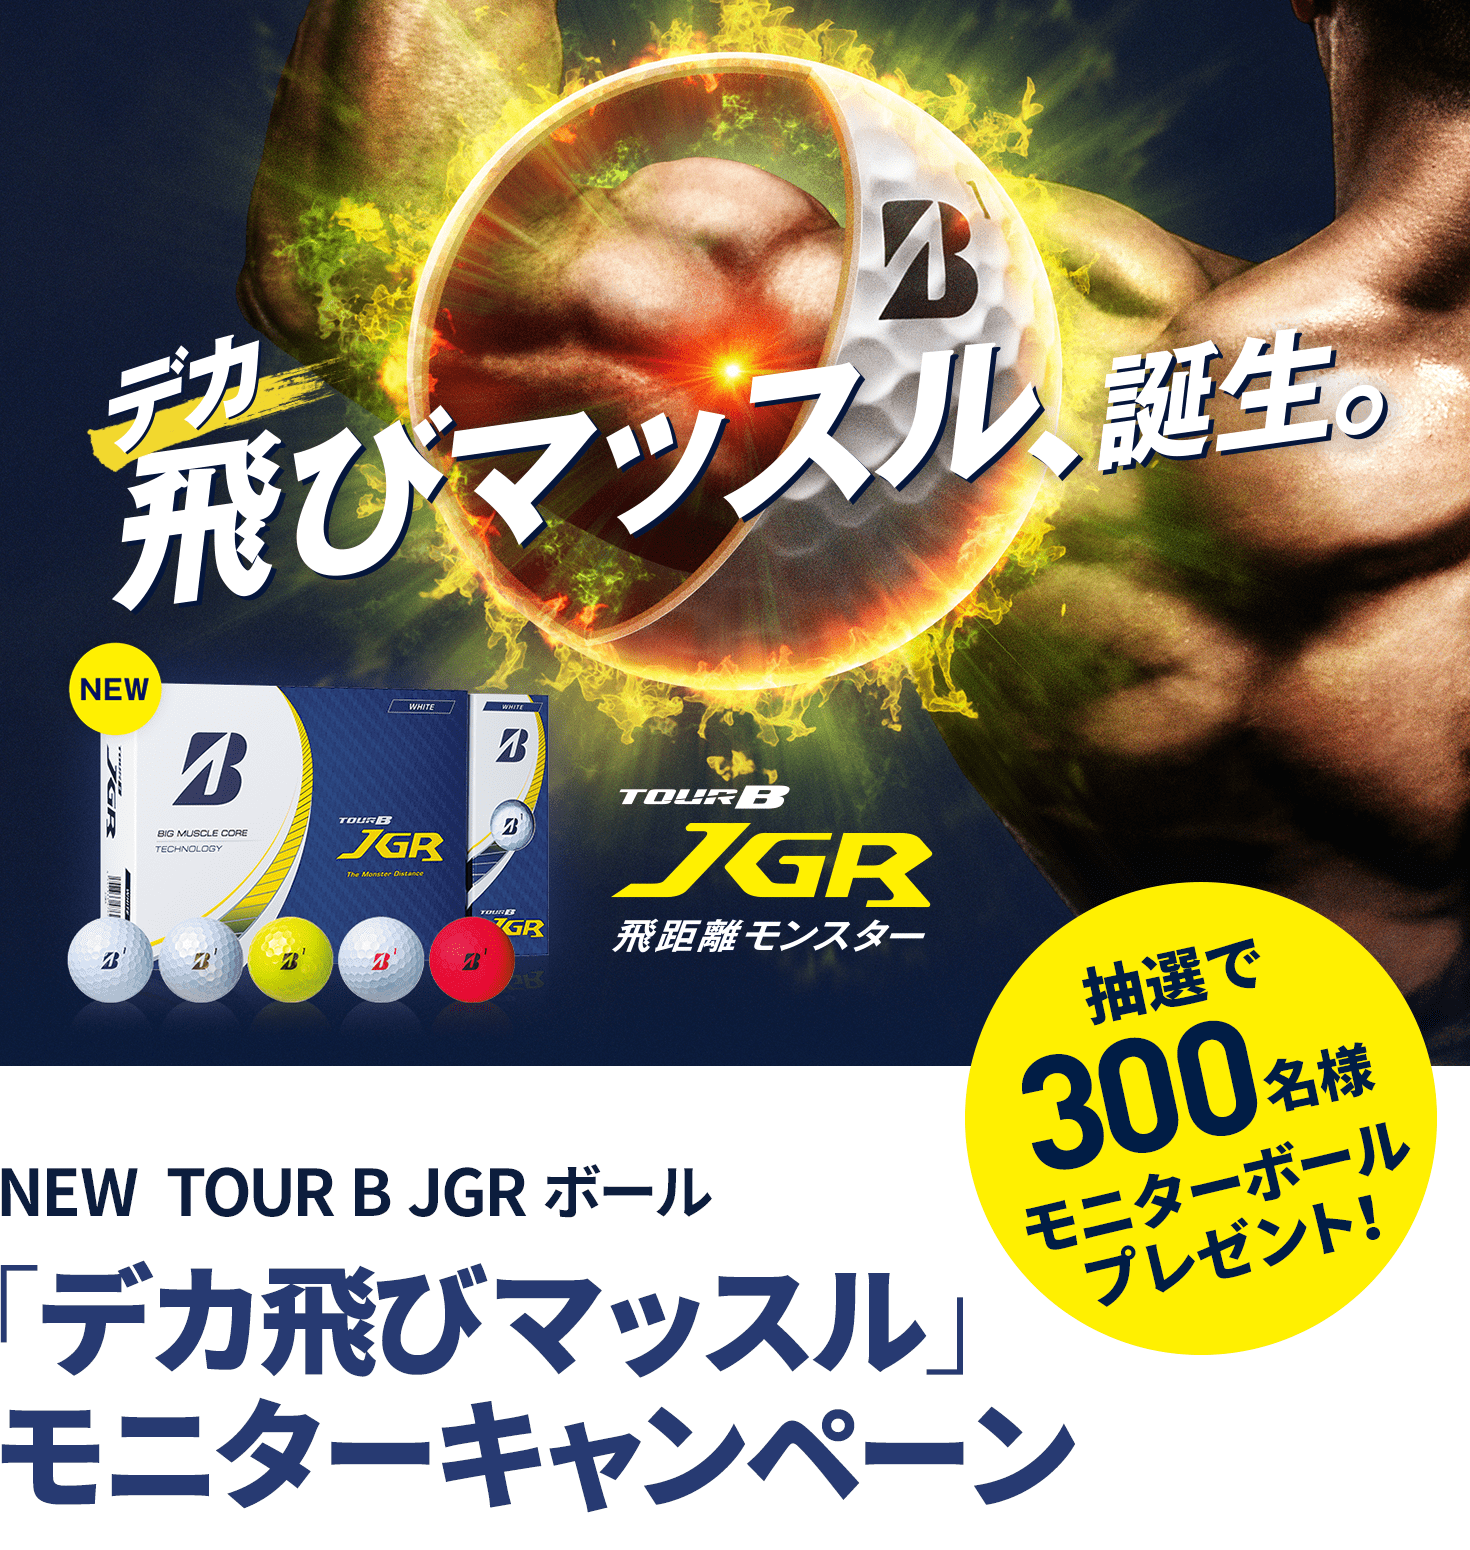 NEW TOUR B JGR ボール「デカ飛びマッスル」モニターキャンペーン